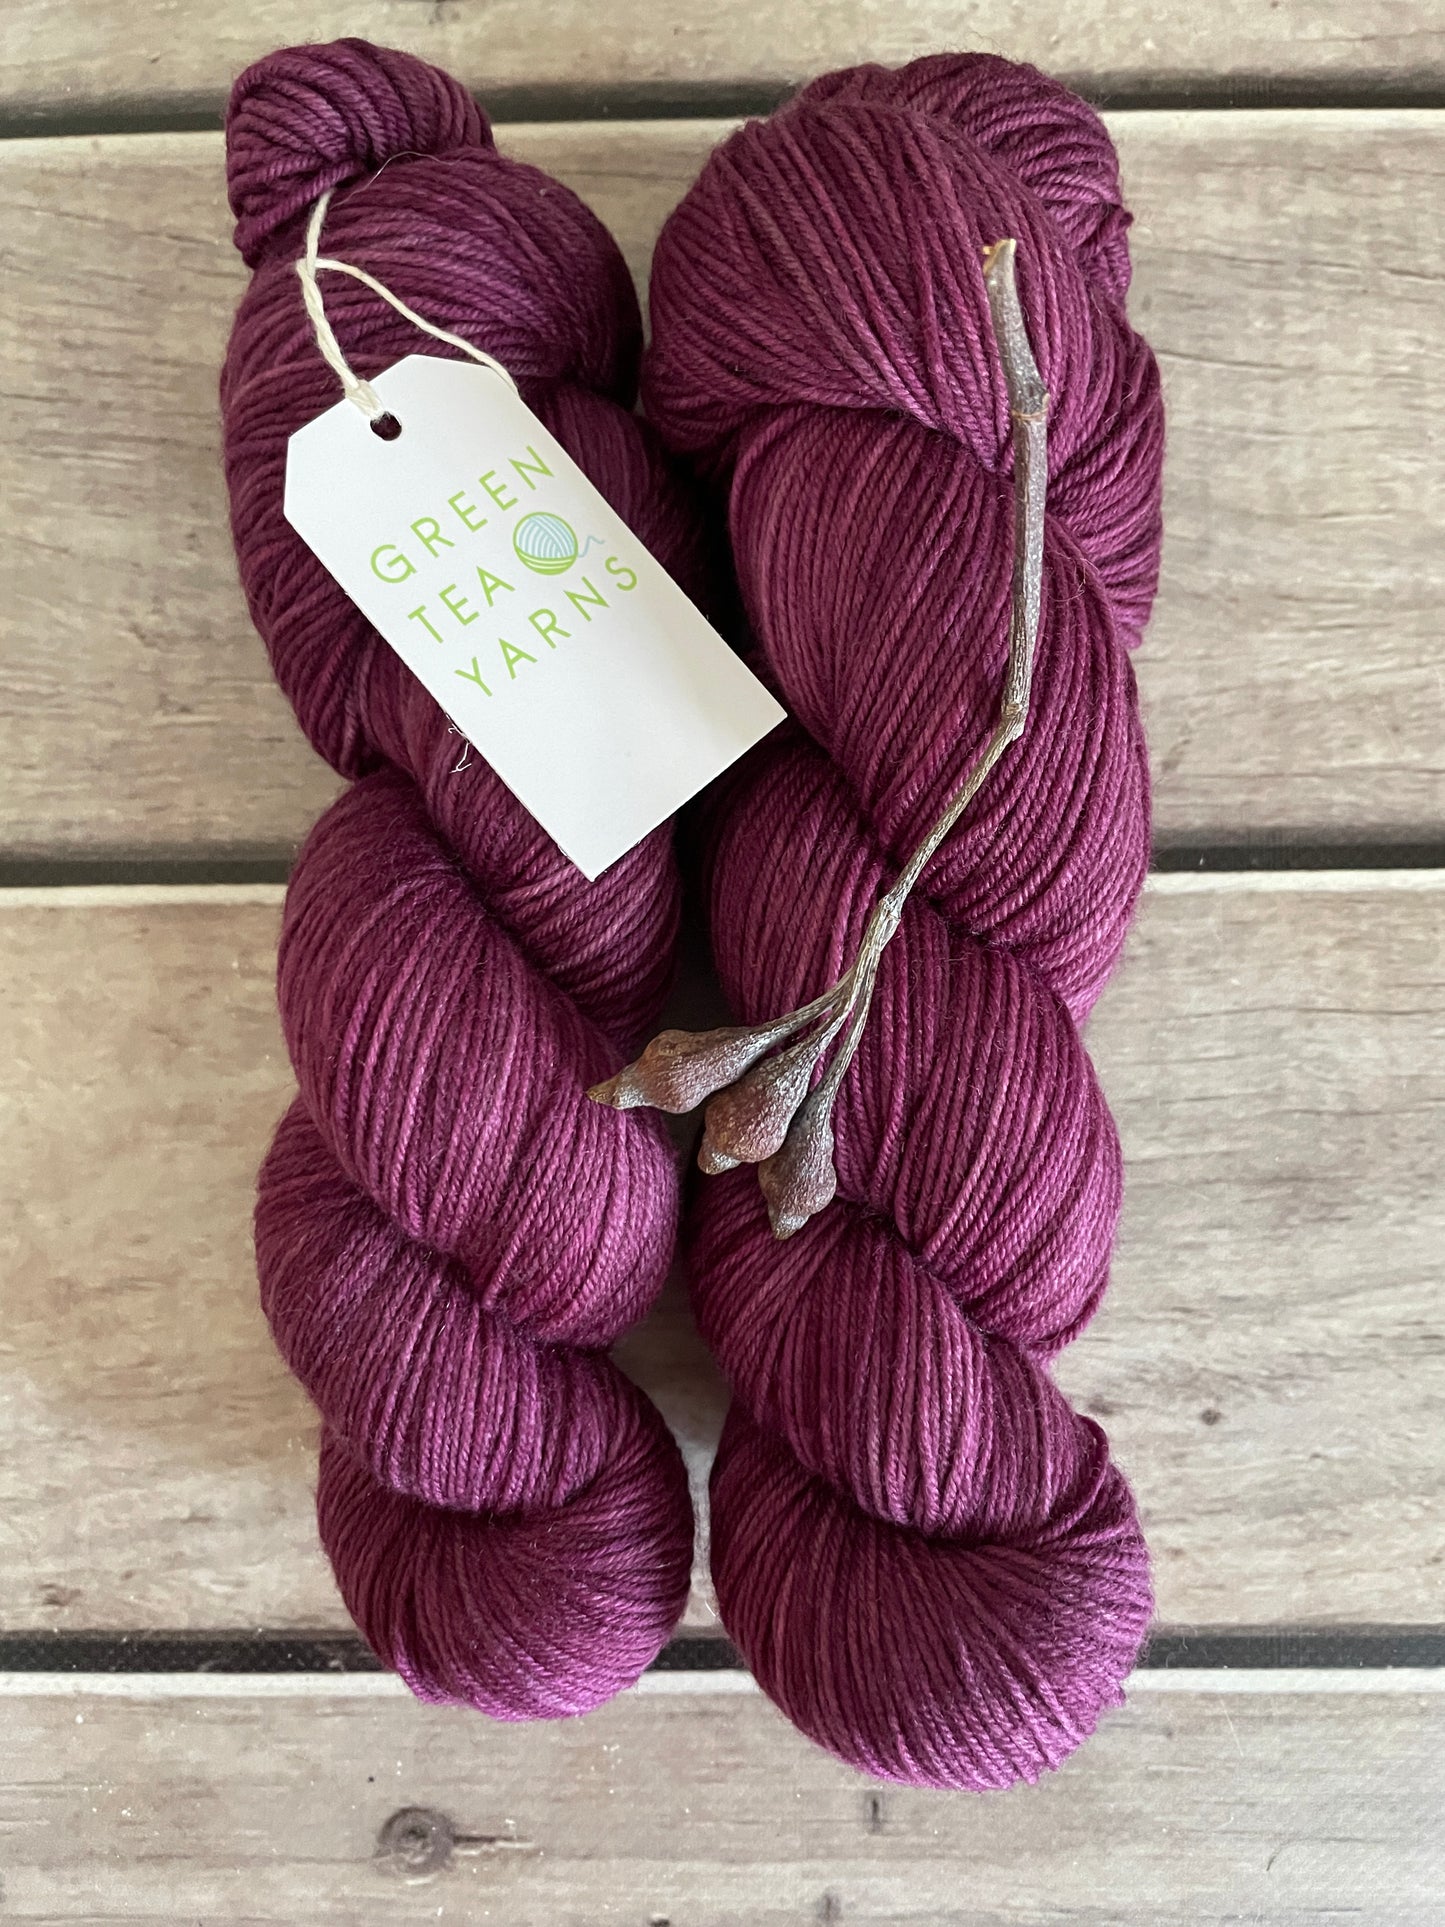 Rose wine - sock yarn in merino and nylon - Darjeeling